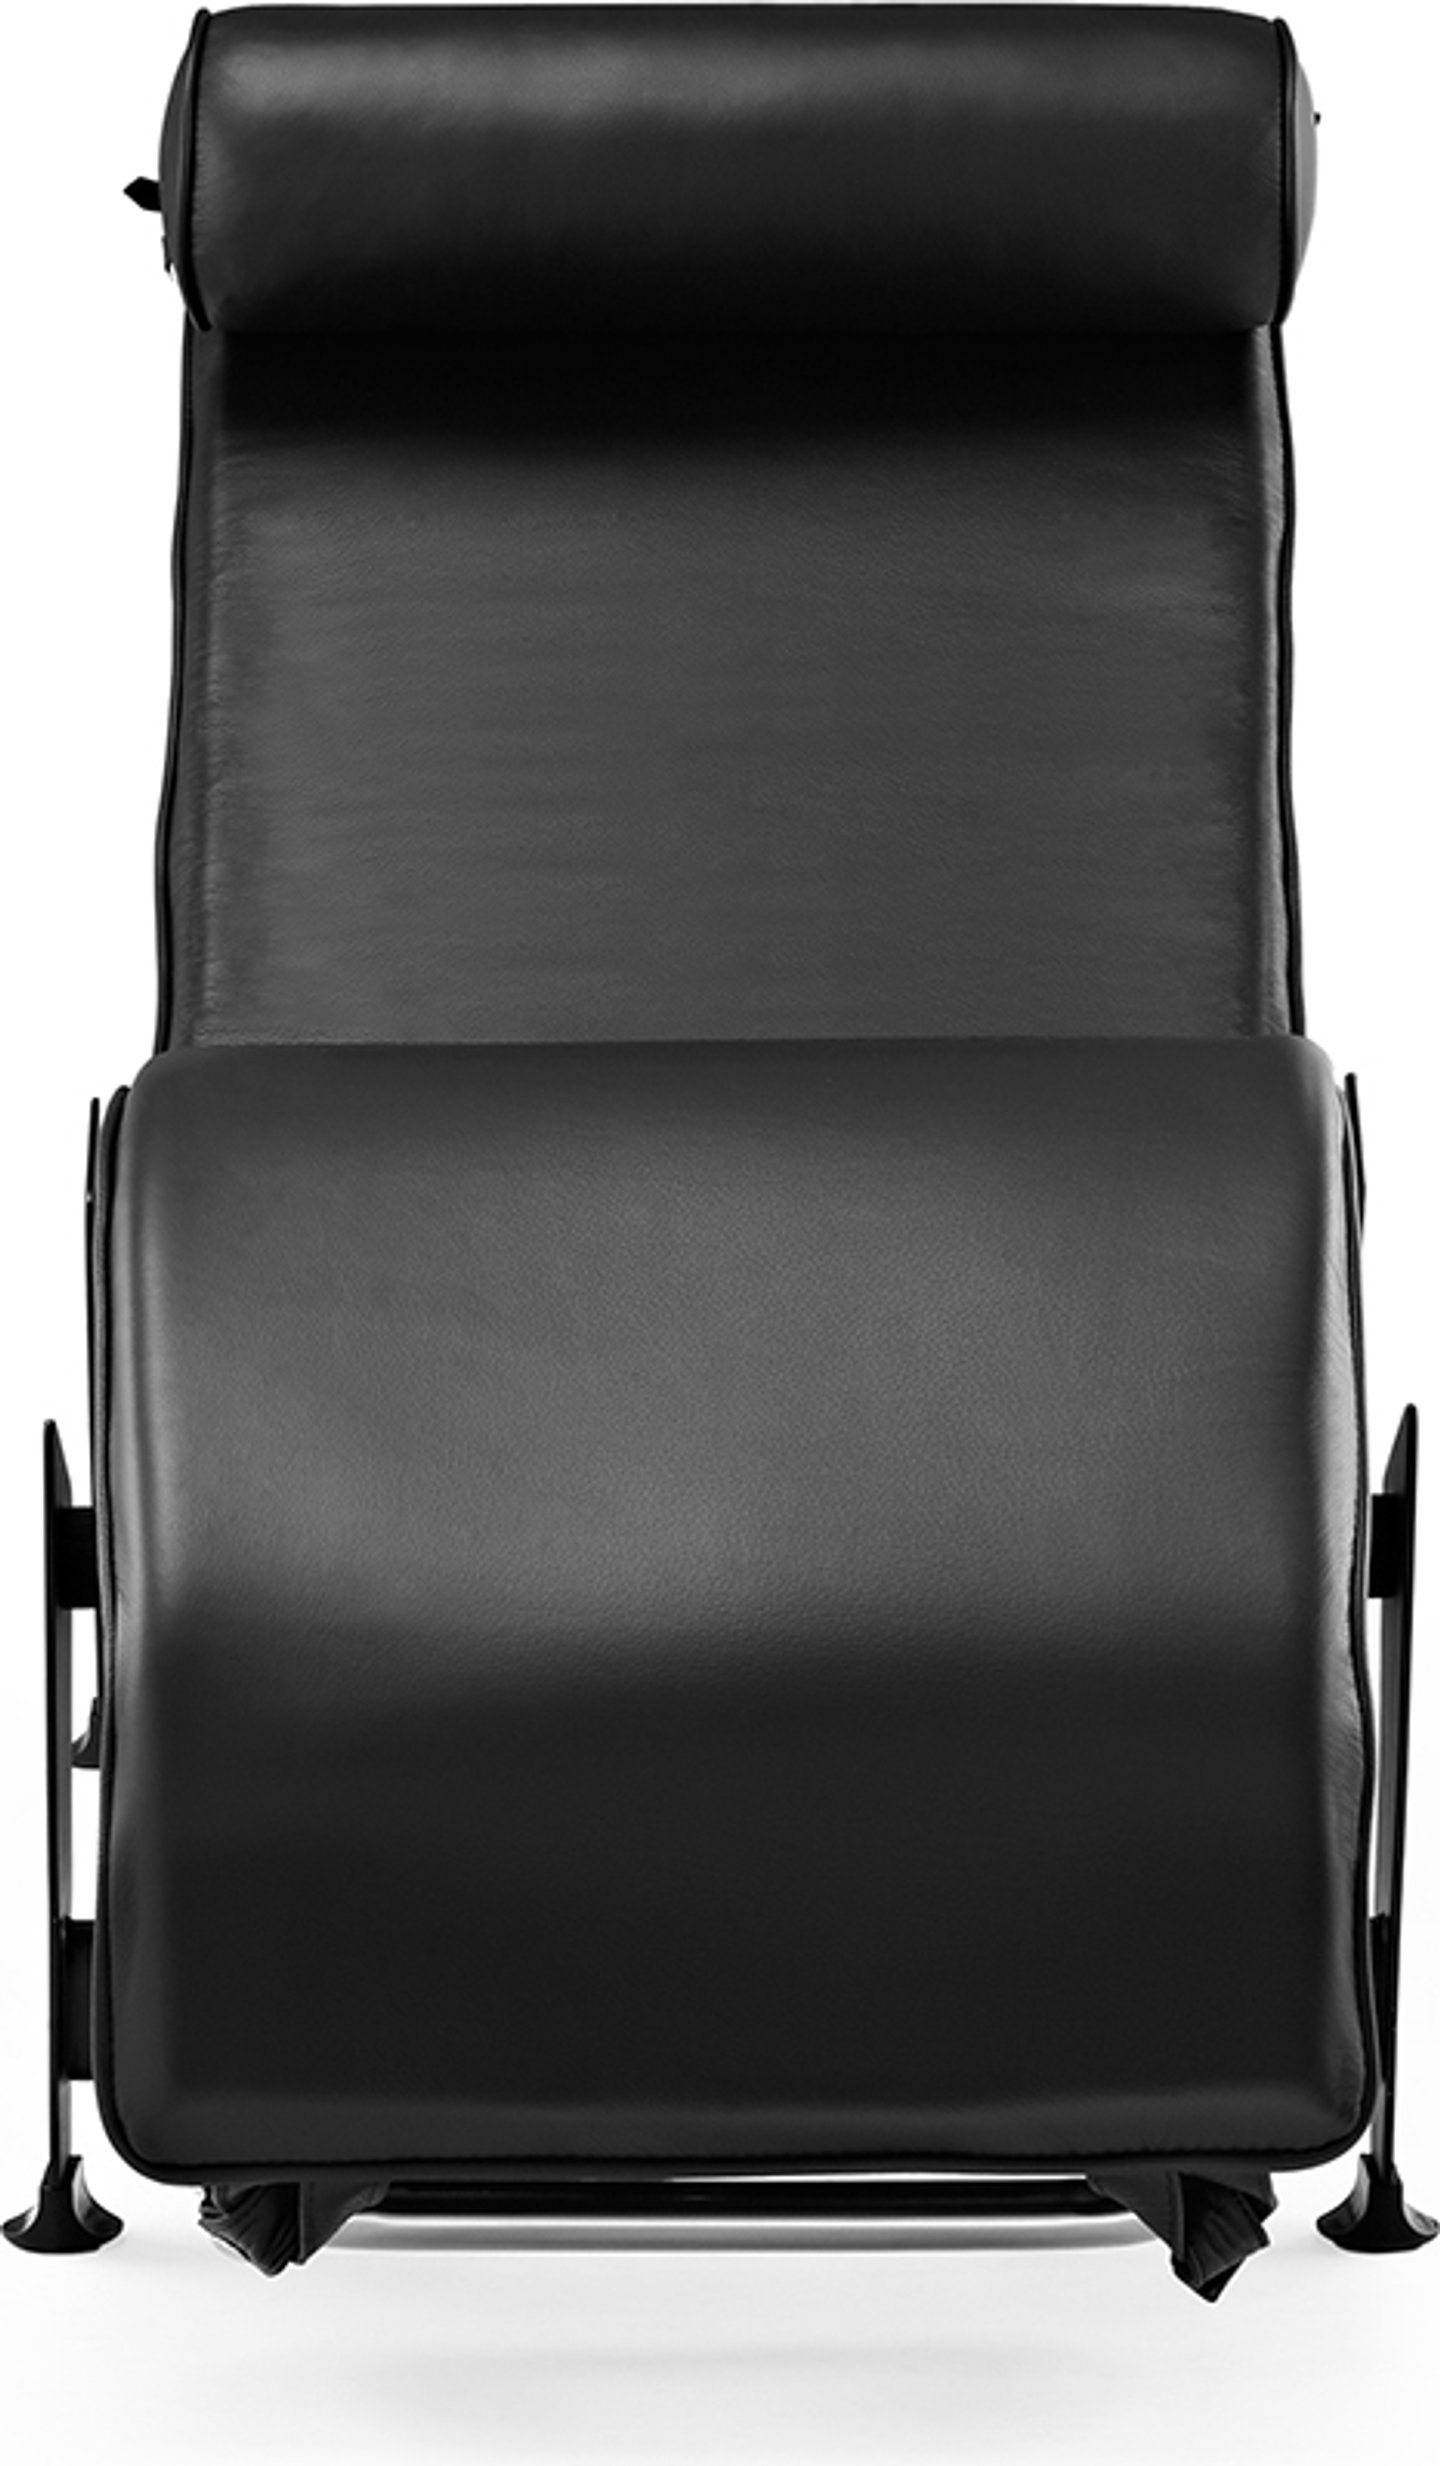 Chaise longue stile LC4 Premium Leather/Black image.